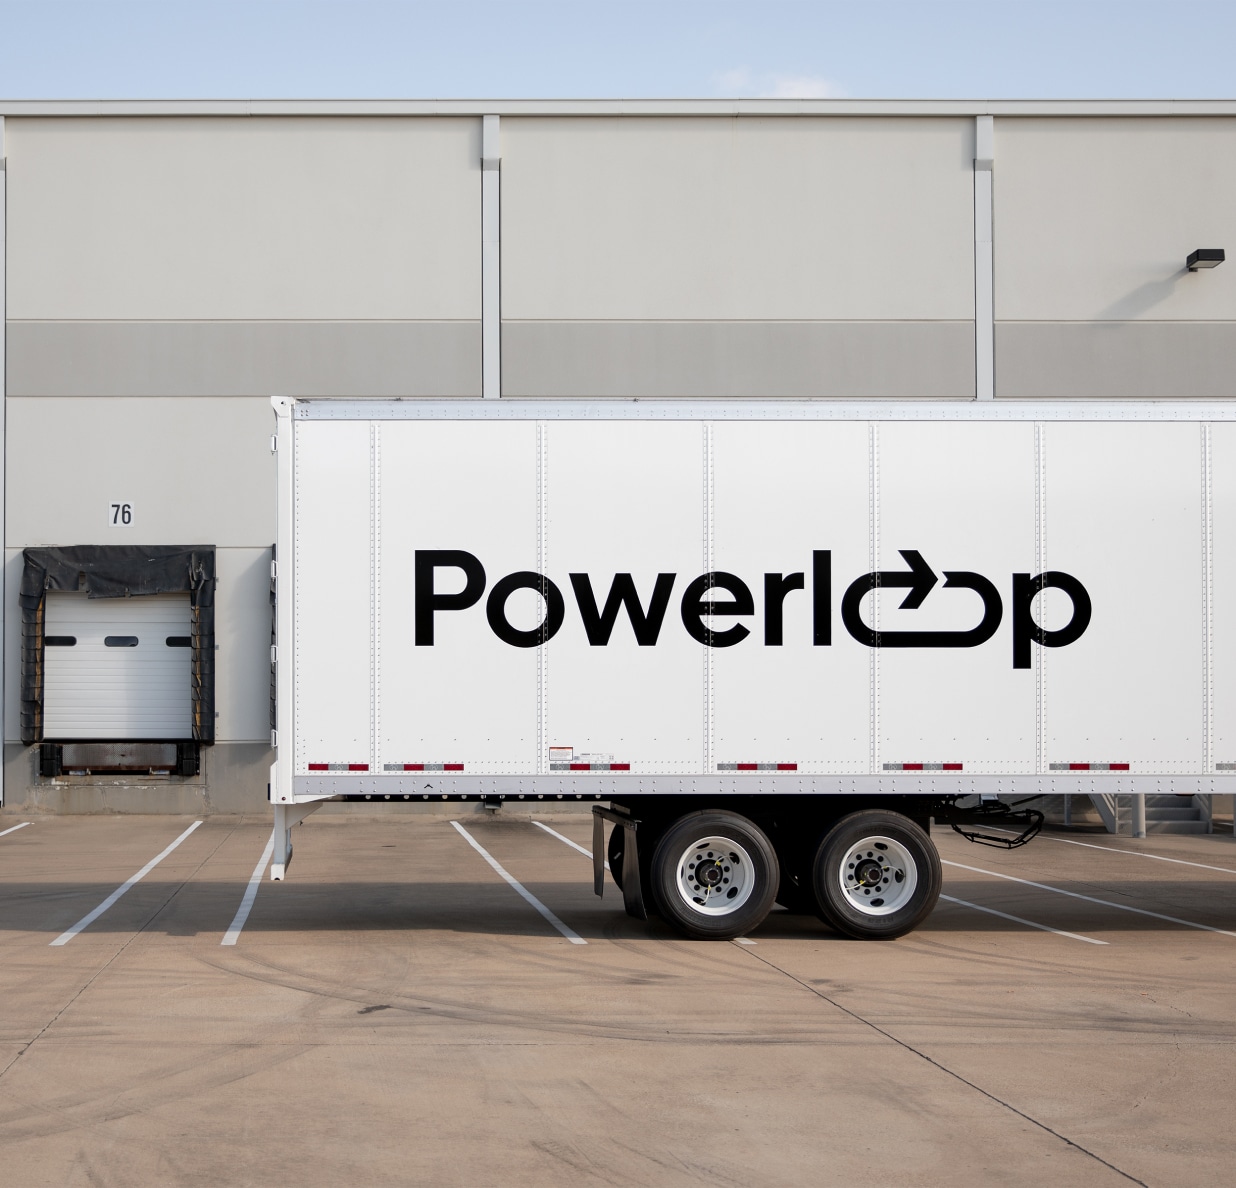 powerloop logo on truck